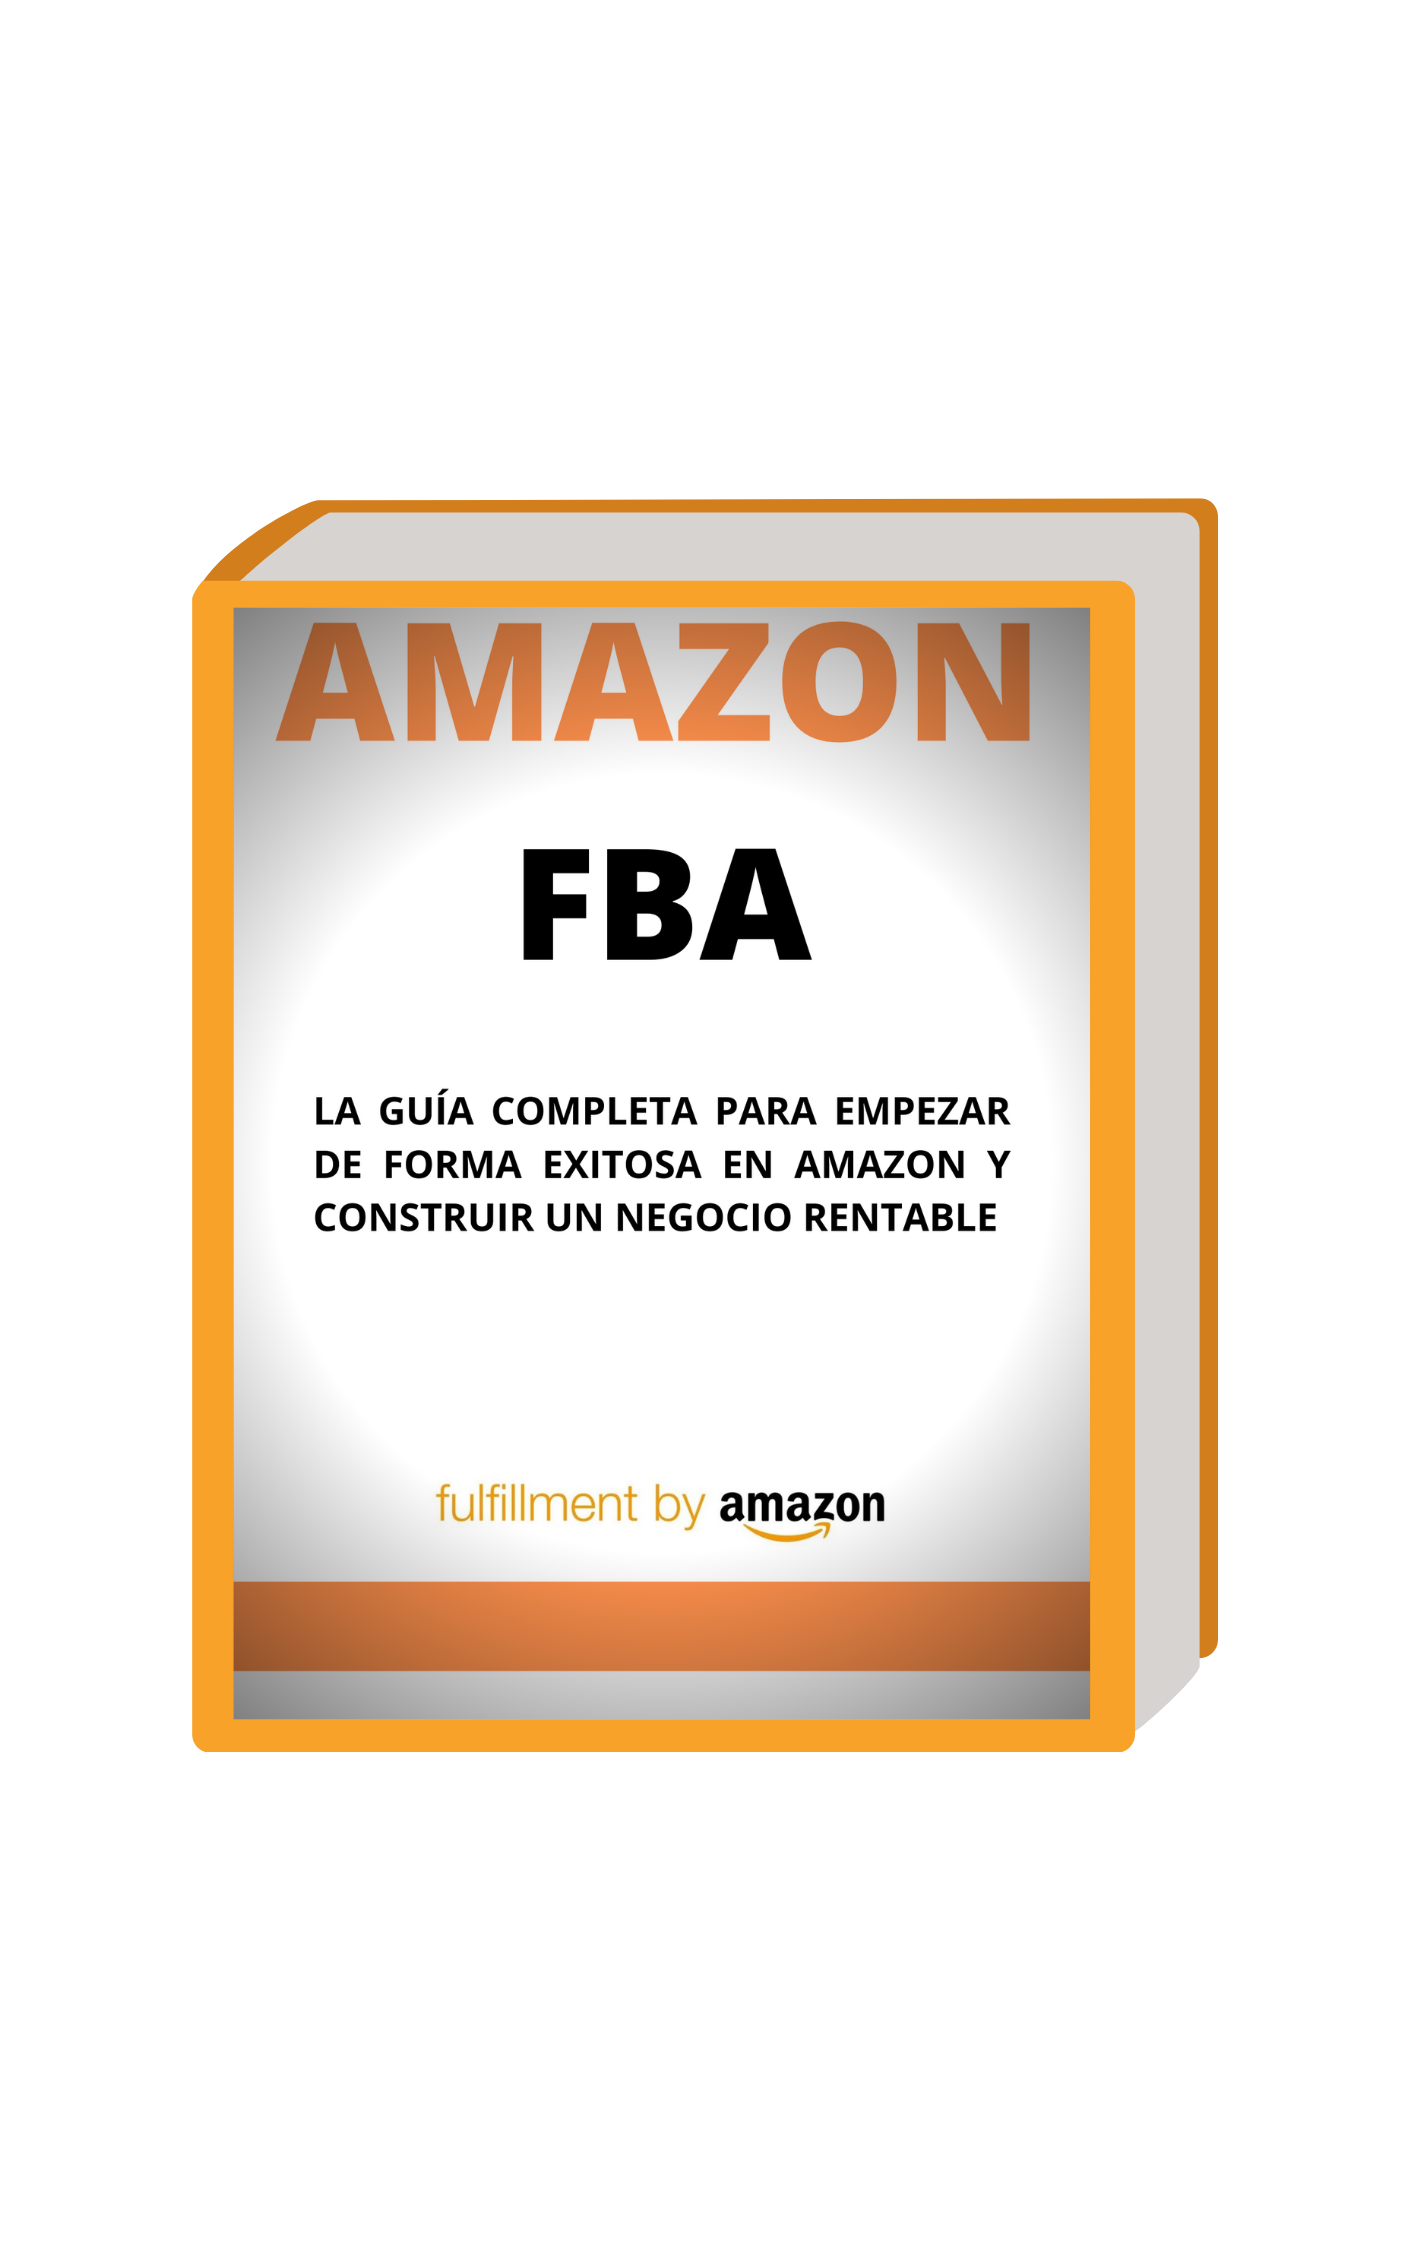 Ebook Gratis - Amazon FBA Guía Completa - Roberto Sánchez Perna